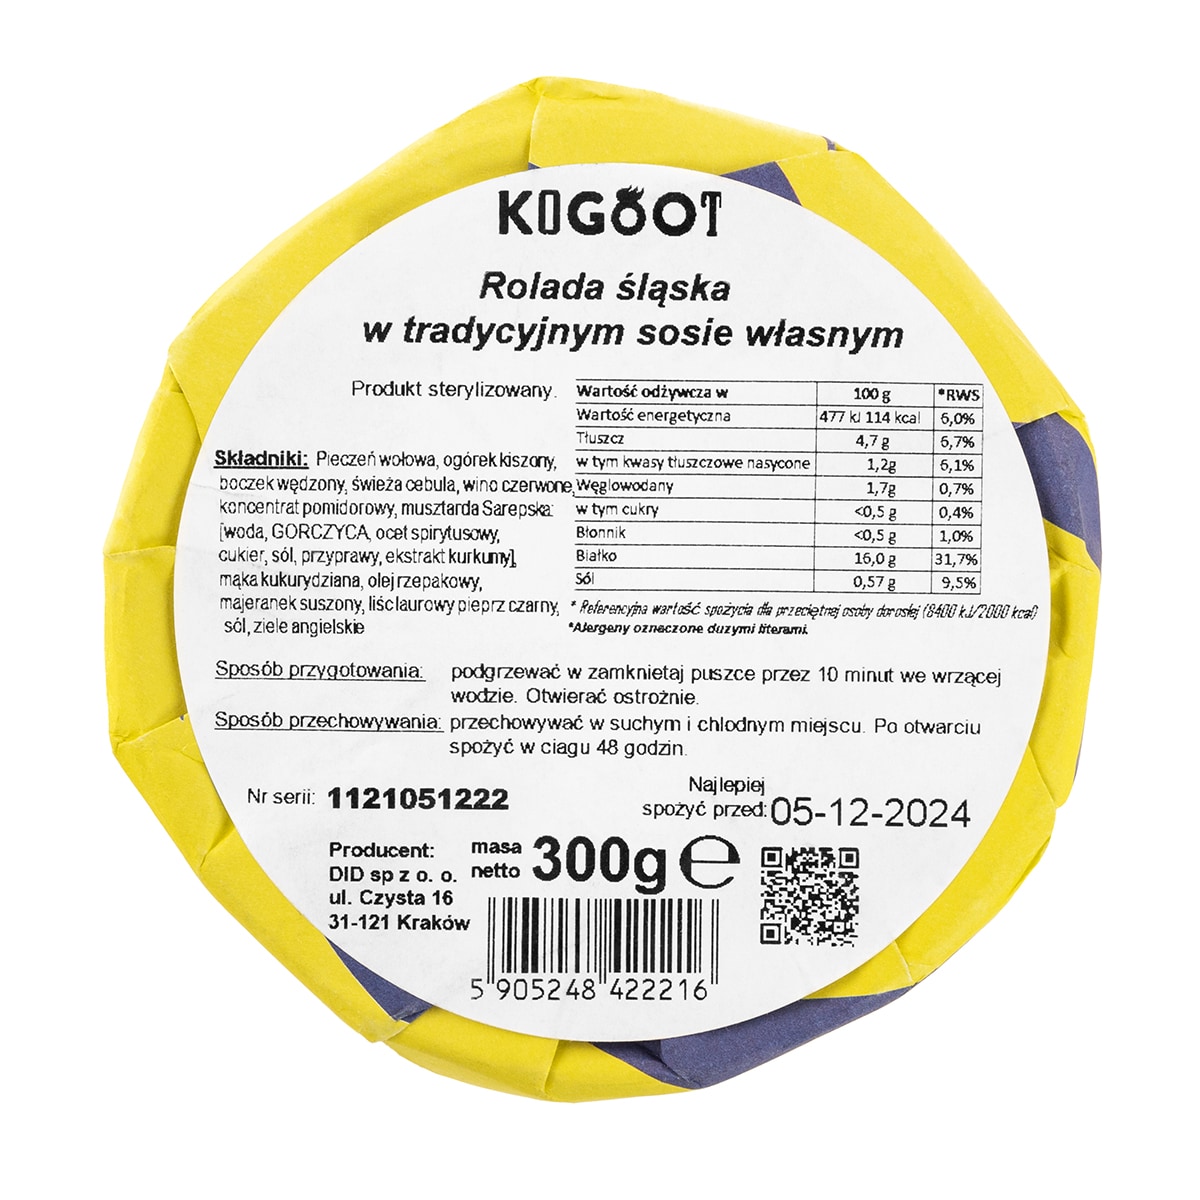 Żywność konserwowana Kogoot - Rolada śląska w tradycyjnym sosie własnym 300 g